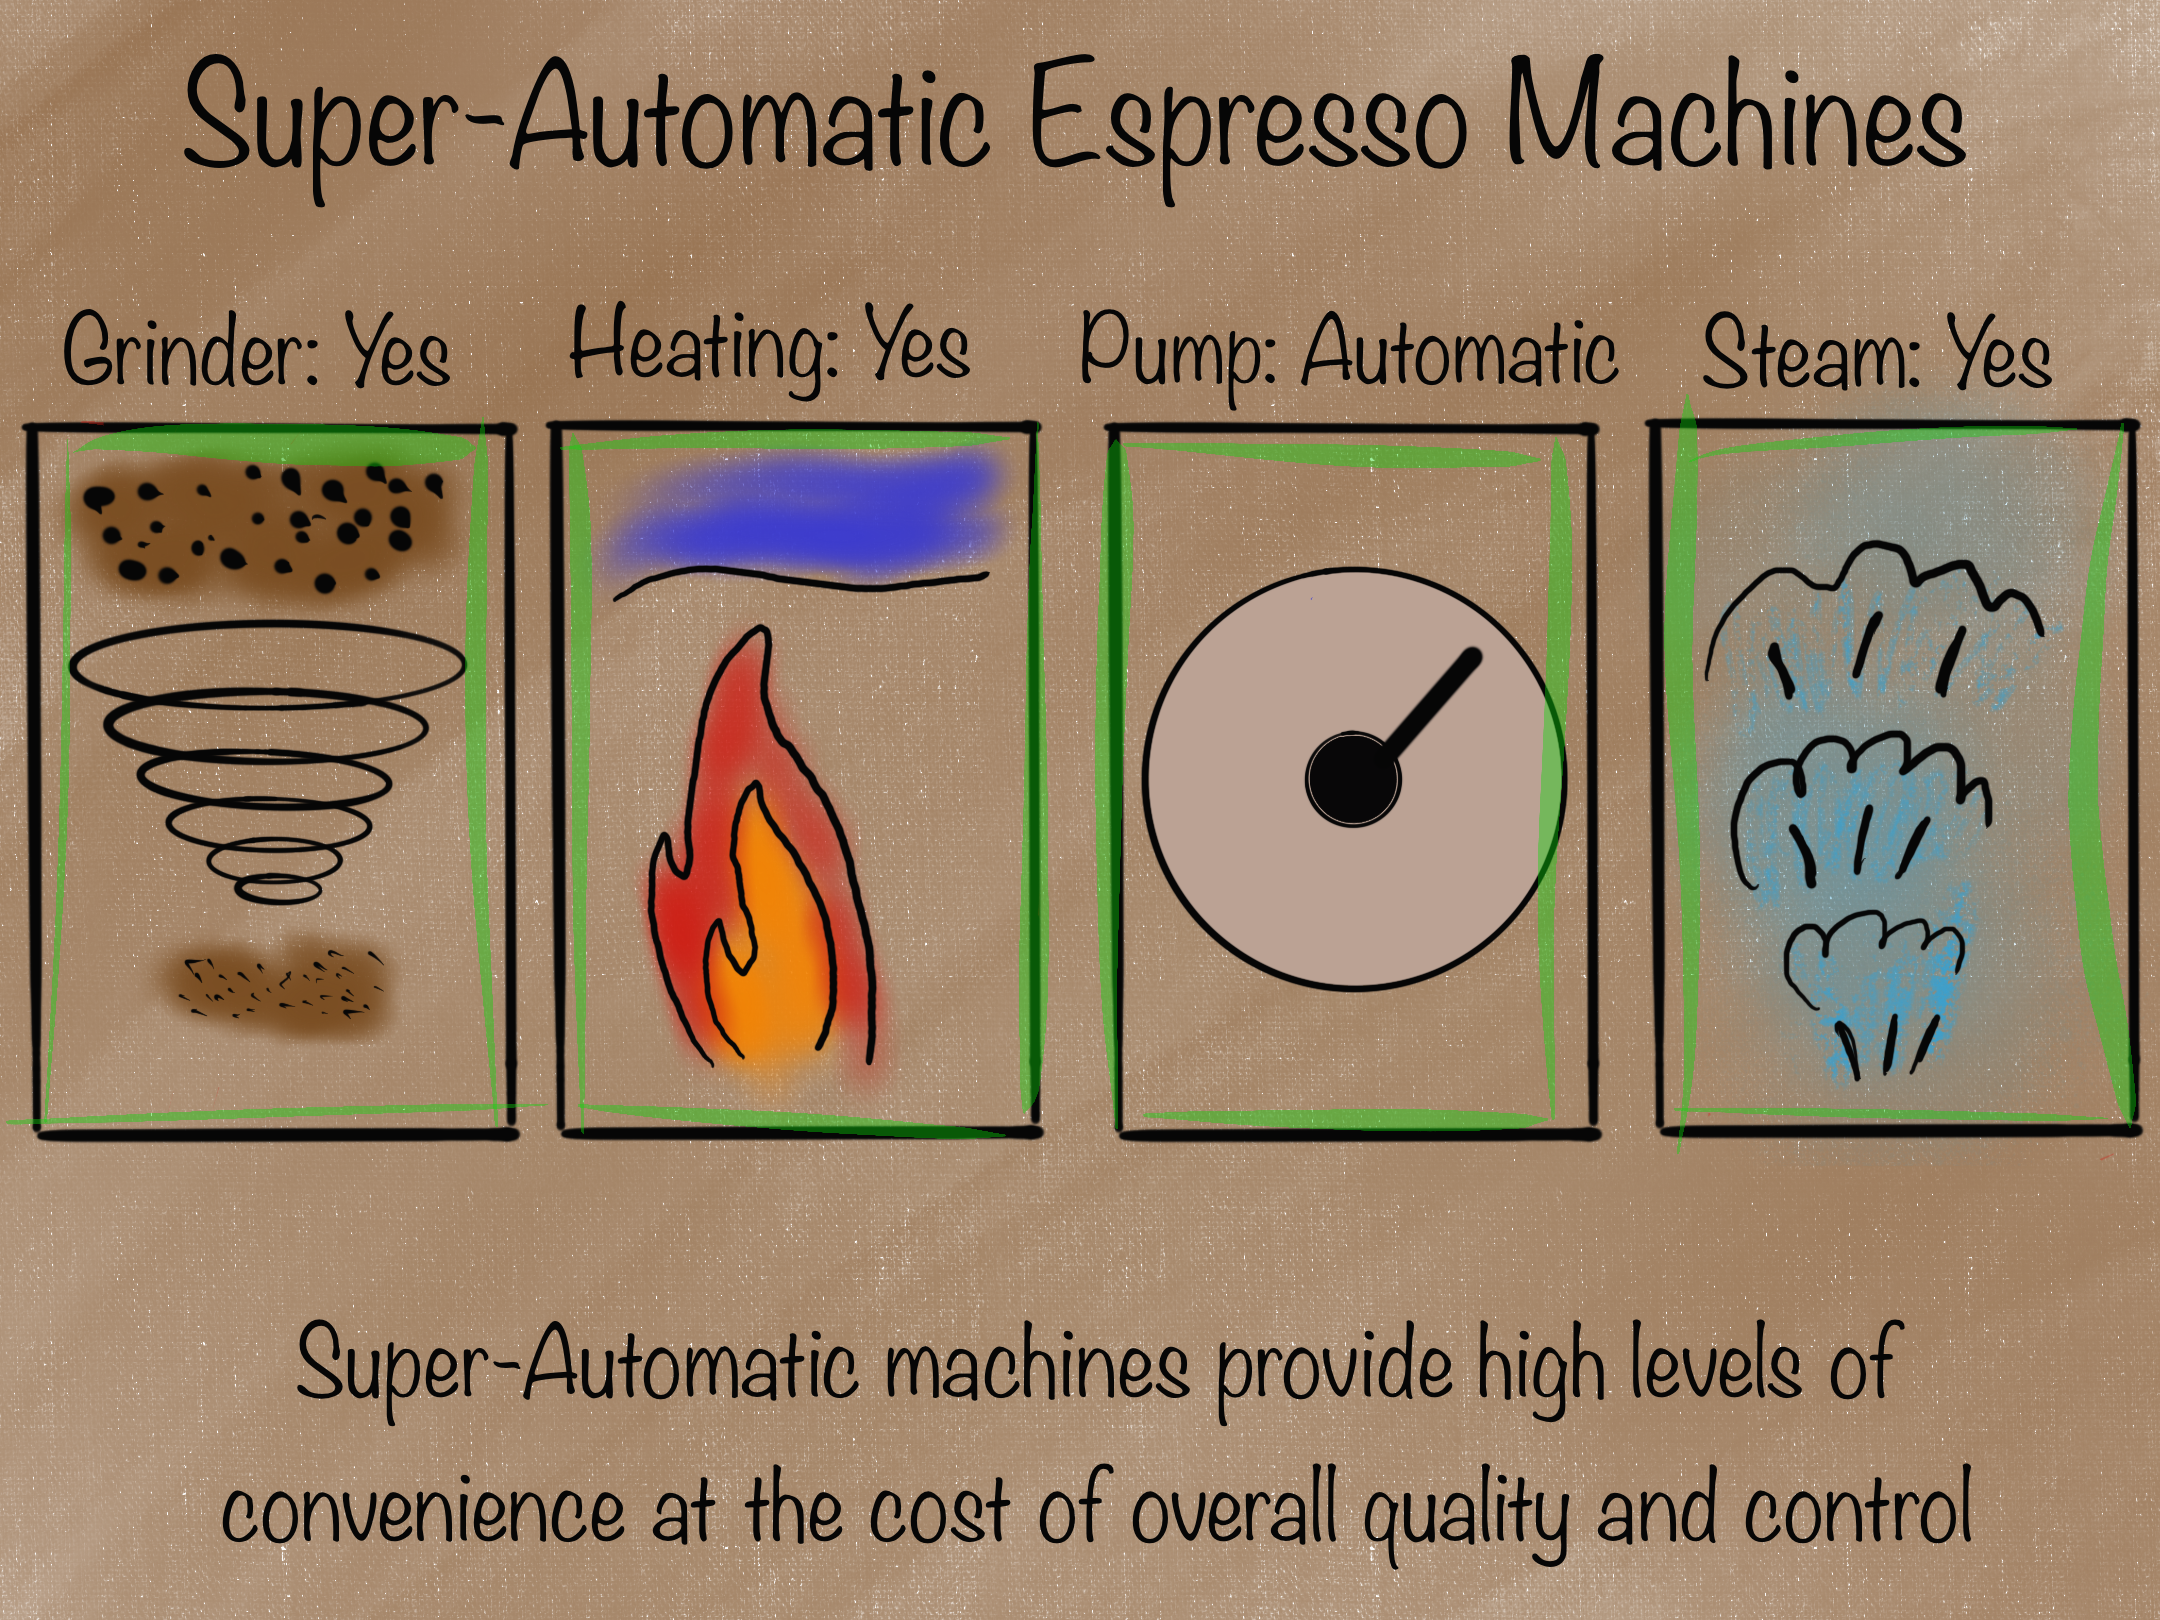 Super-Automatic Espresso Machine Overview